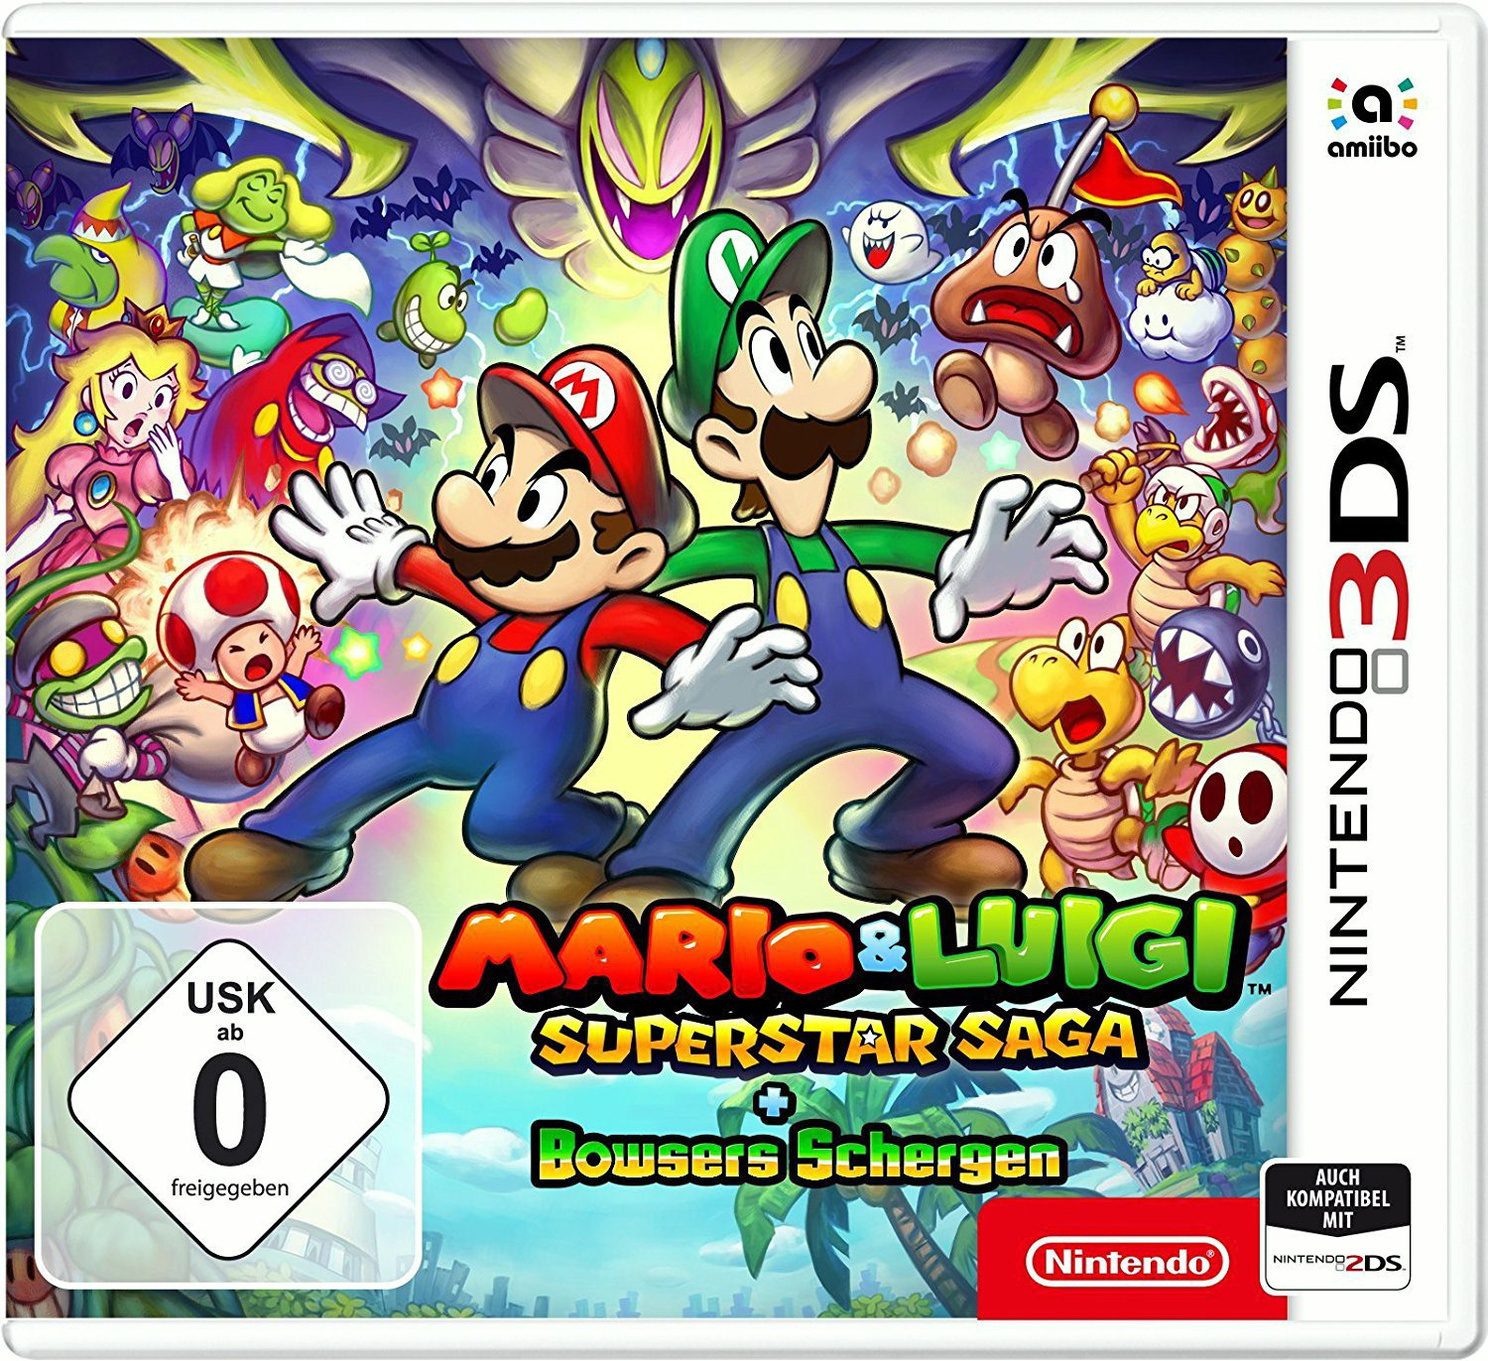 Mario & Luigi: Superstar Saga + - 3DS] Nintendo Schergen Bowsers [New